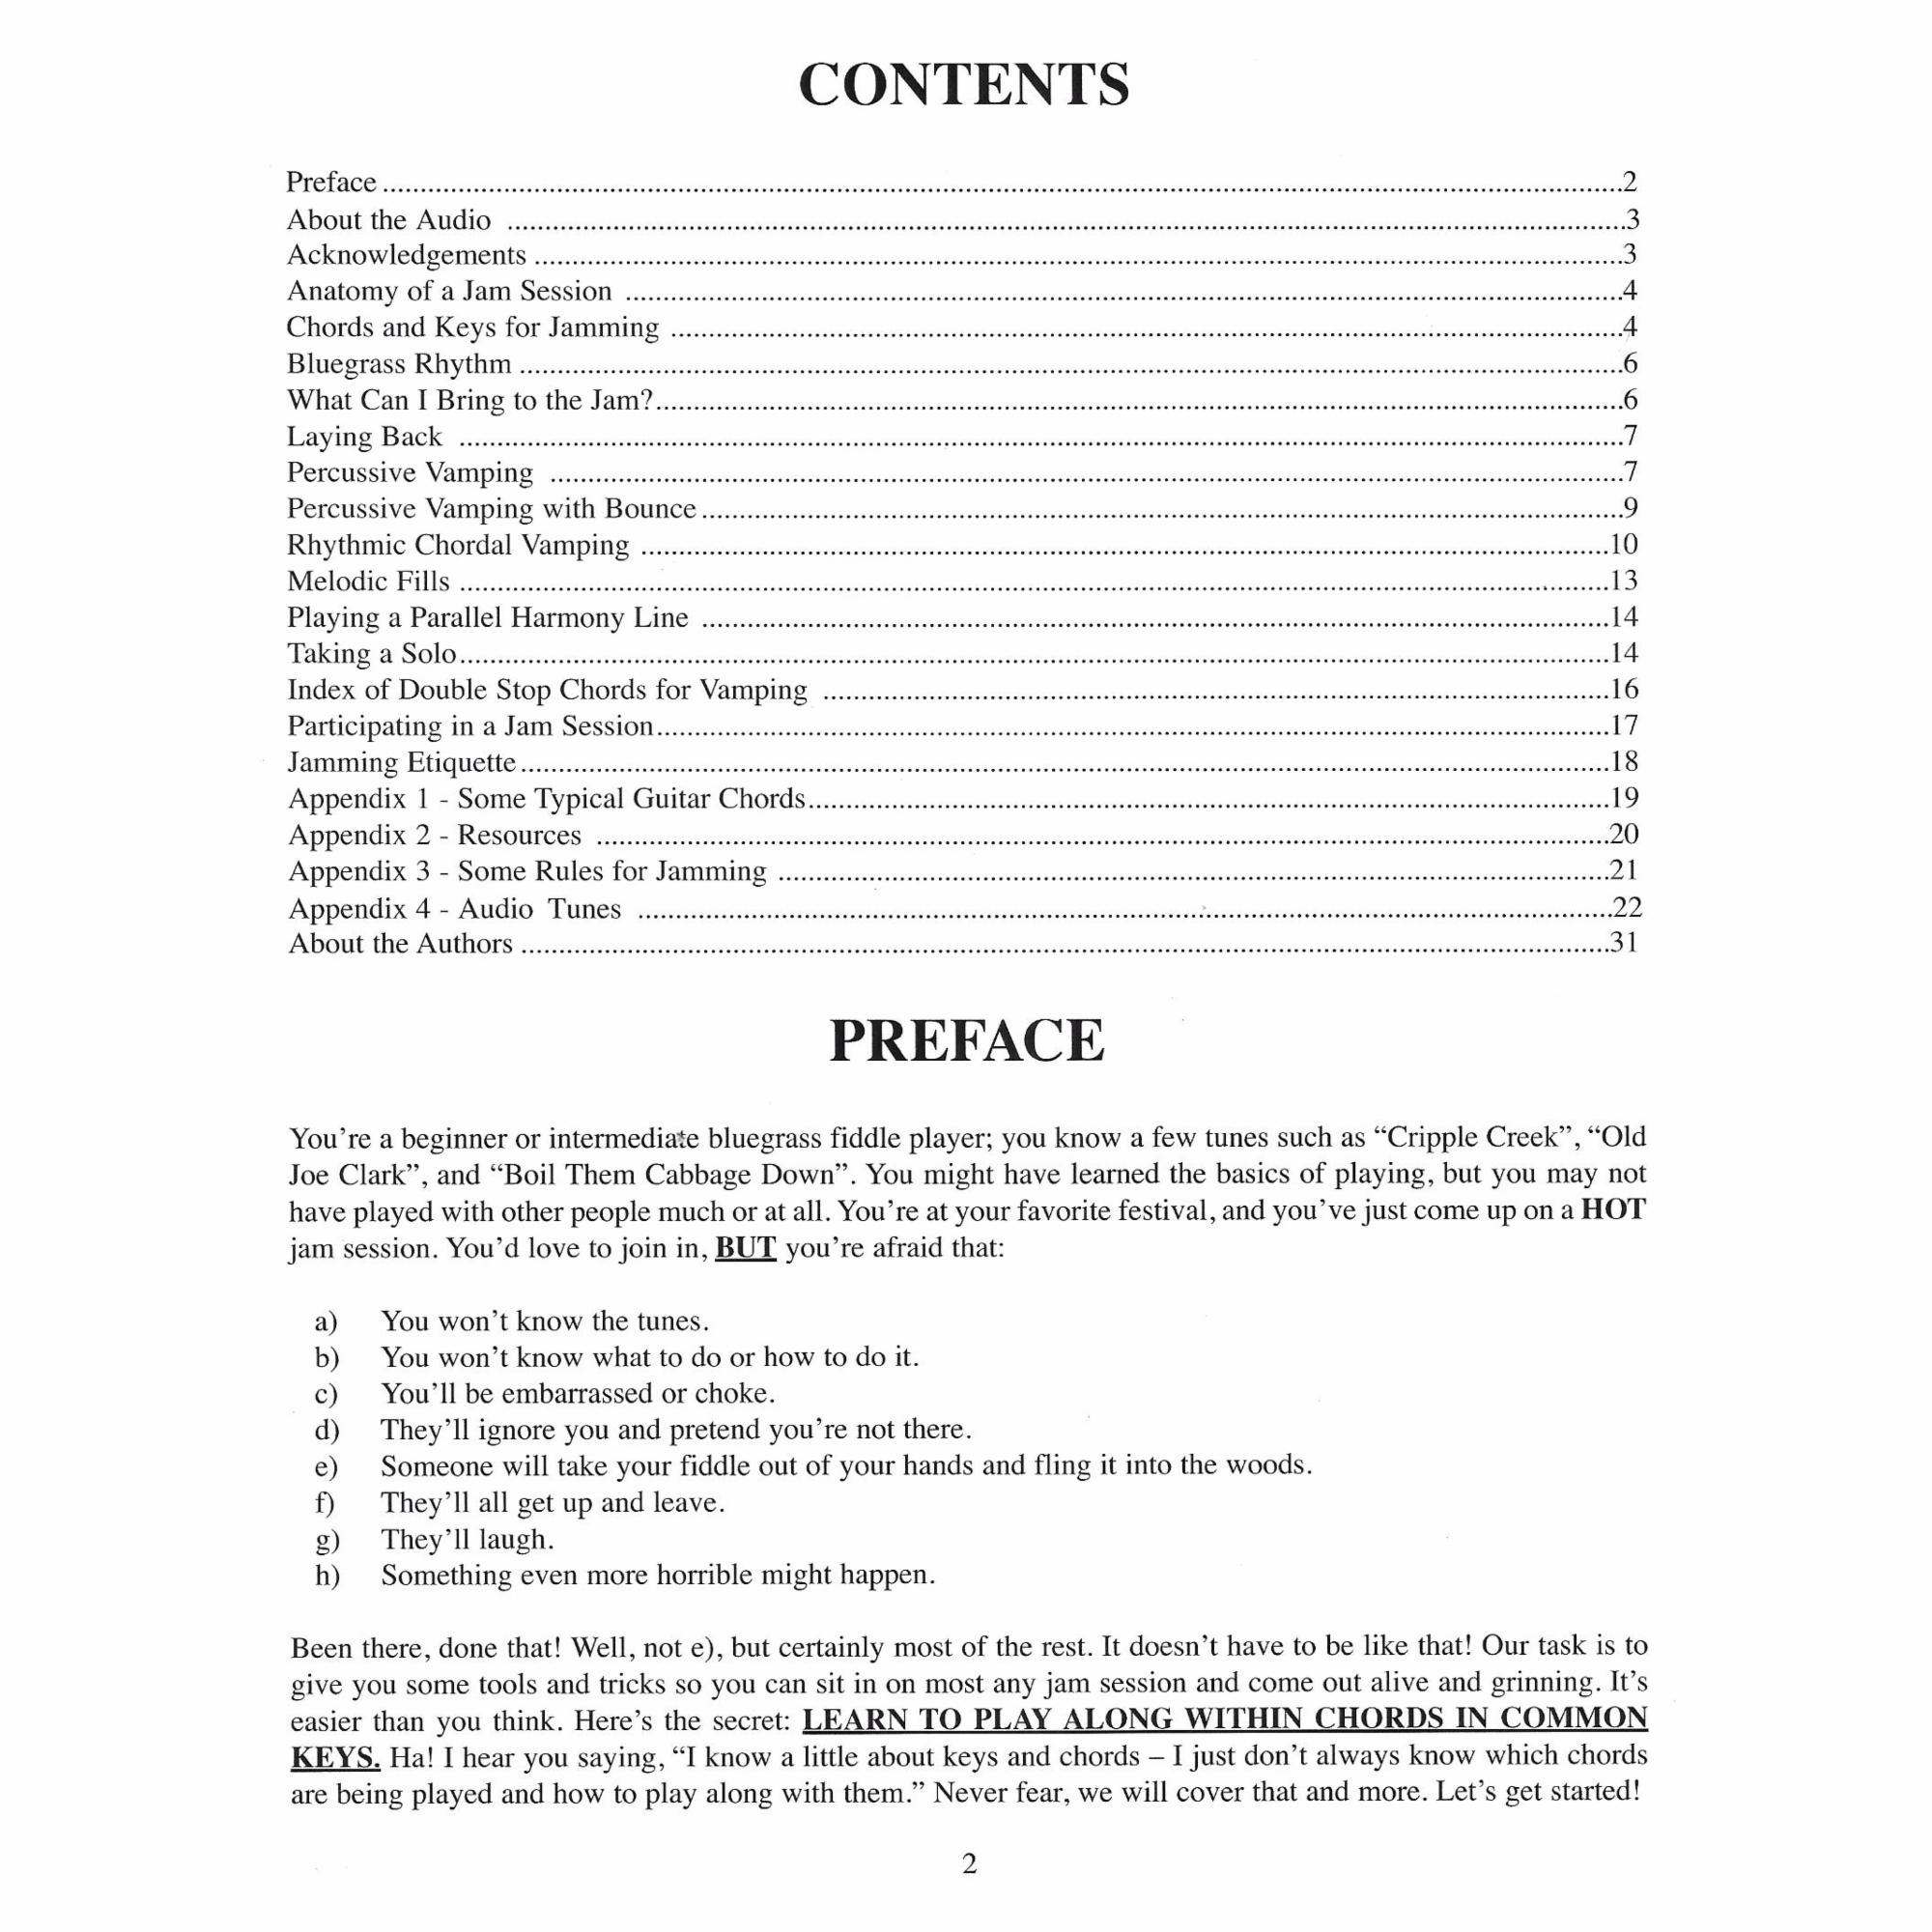 Contents/Preface